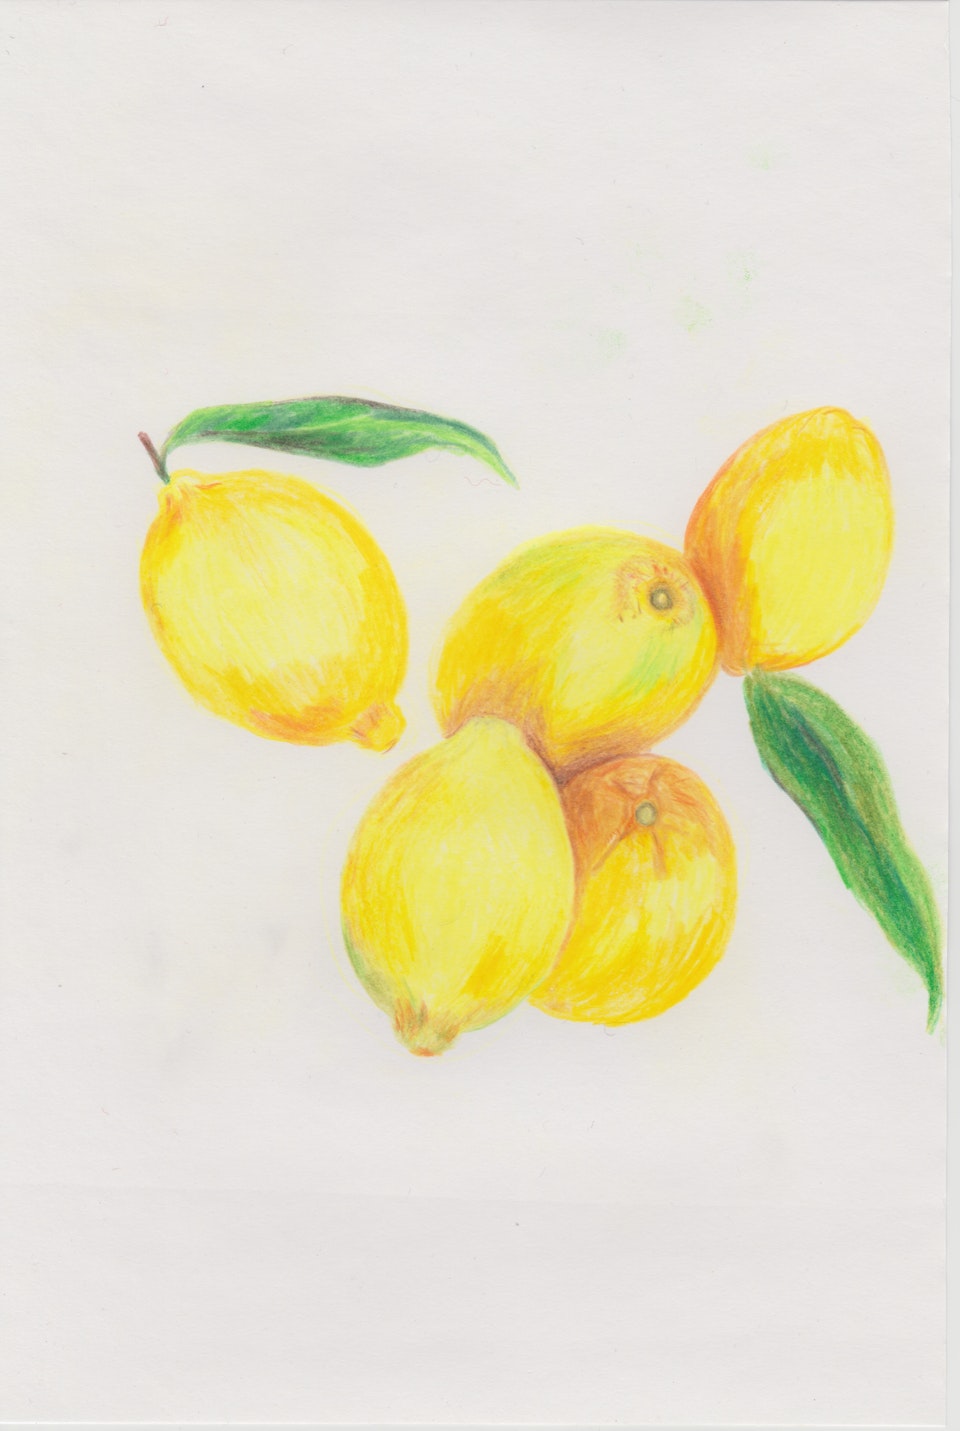 Nature - Citrus - 2020 - Colour Pencil on Paper -  21 x 29 cm A4